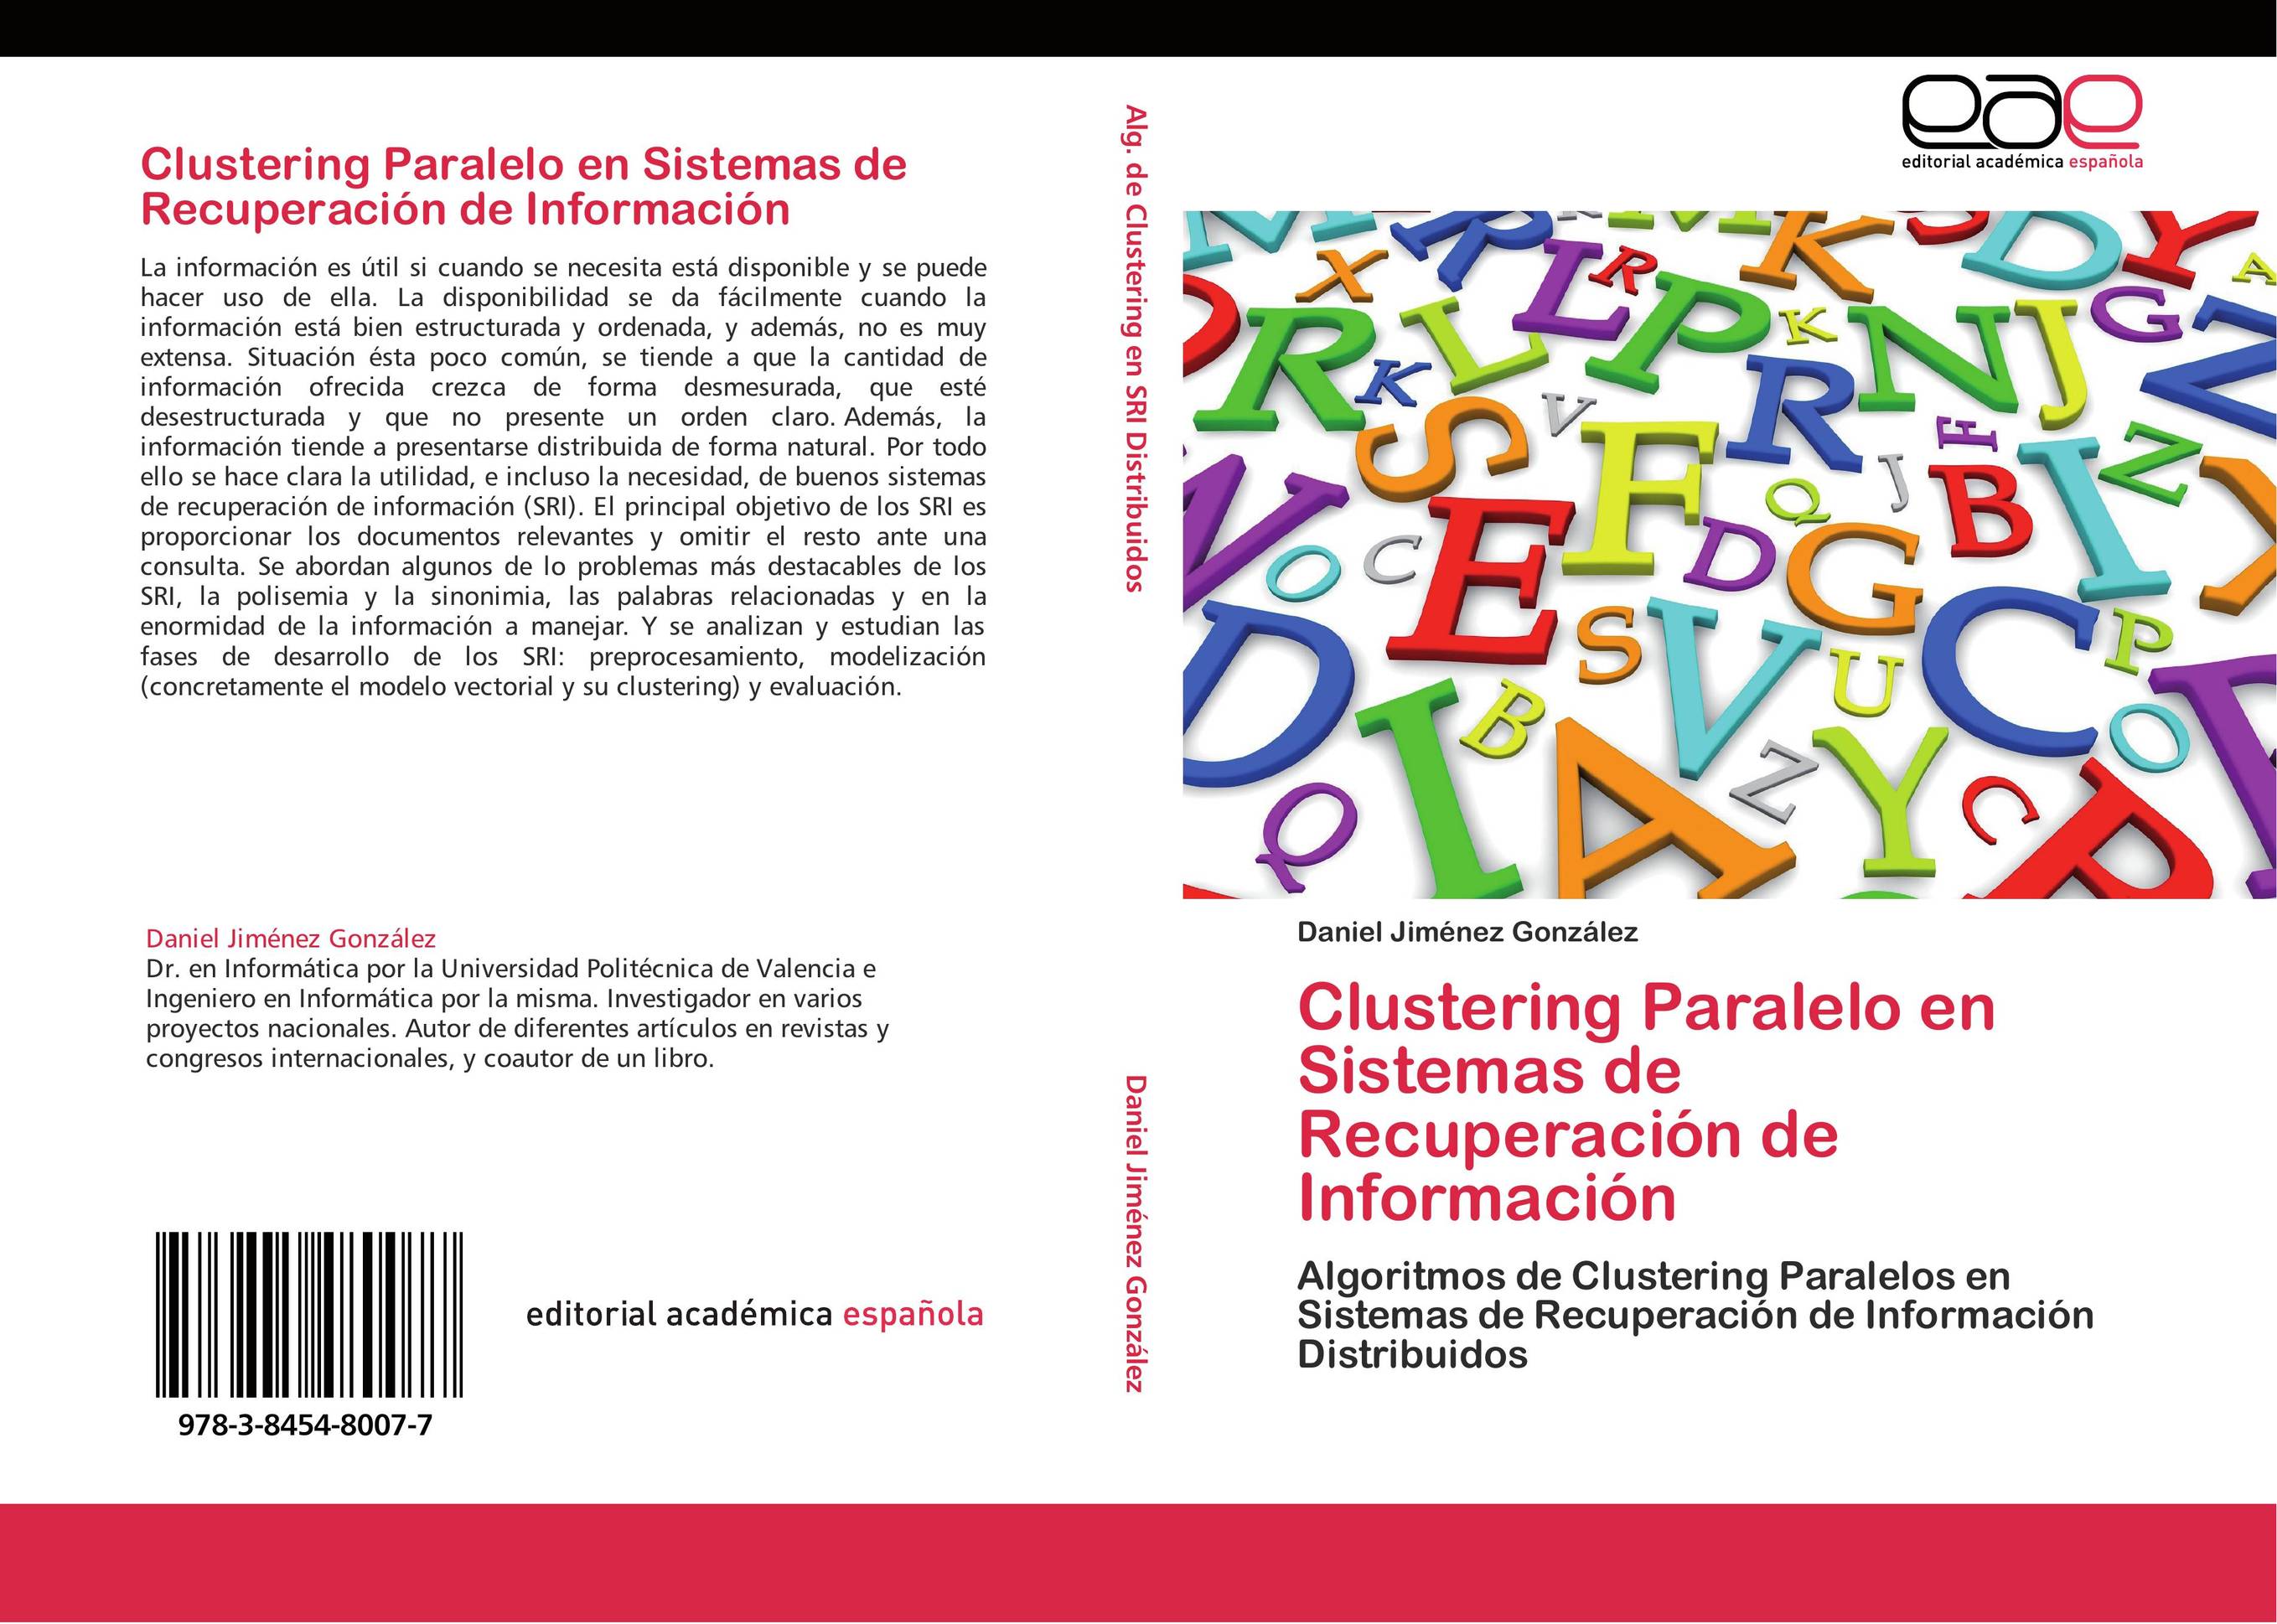 Clustering Paralelo en Sistemas de Recuperación de Información